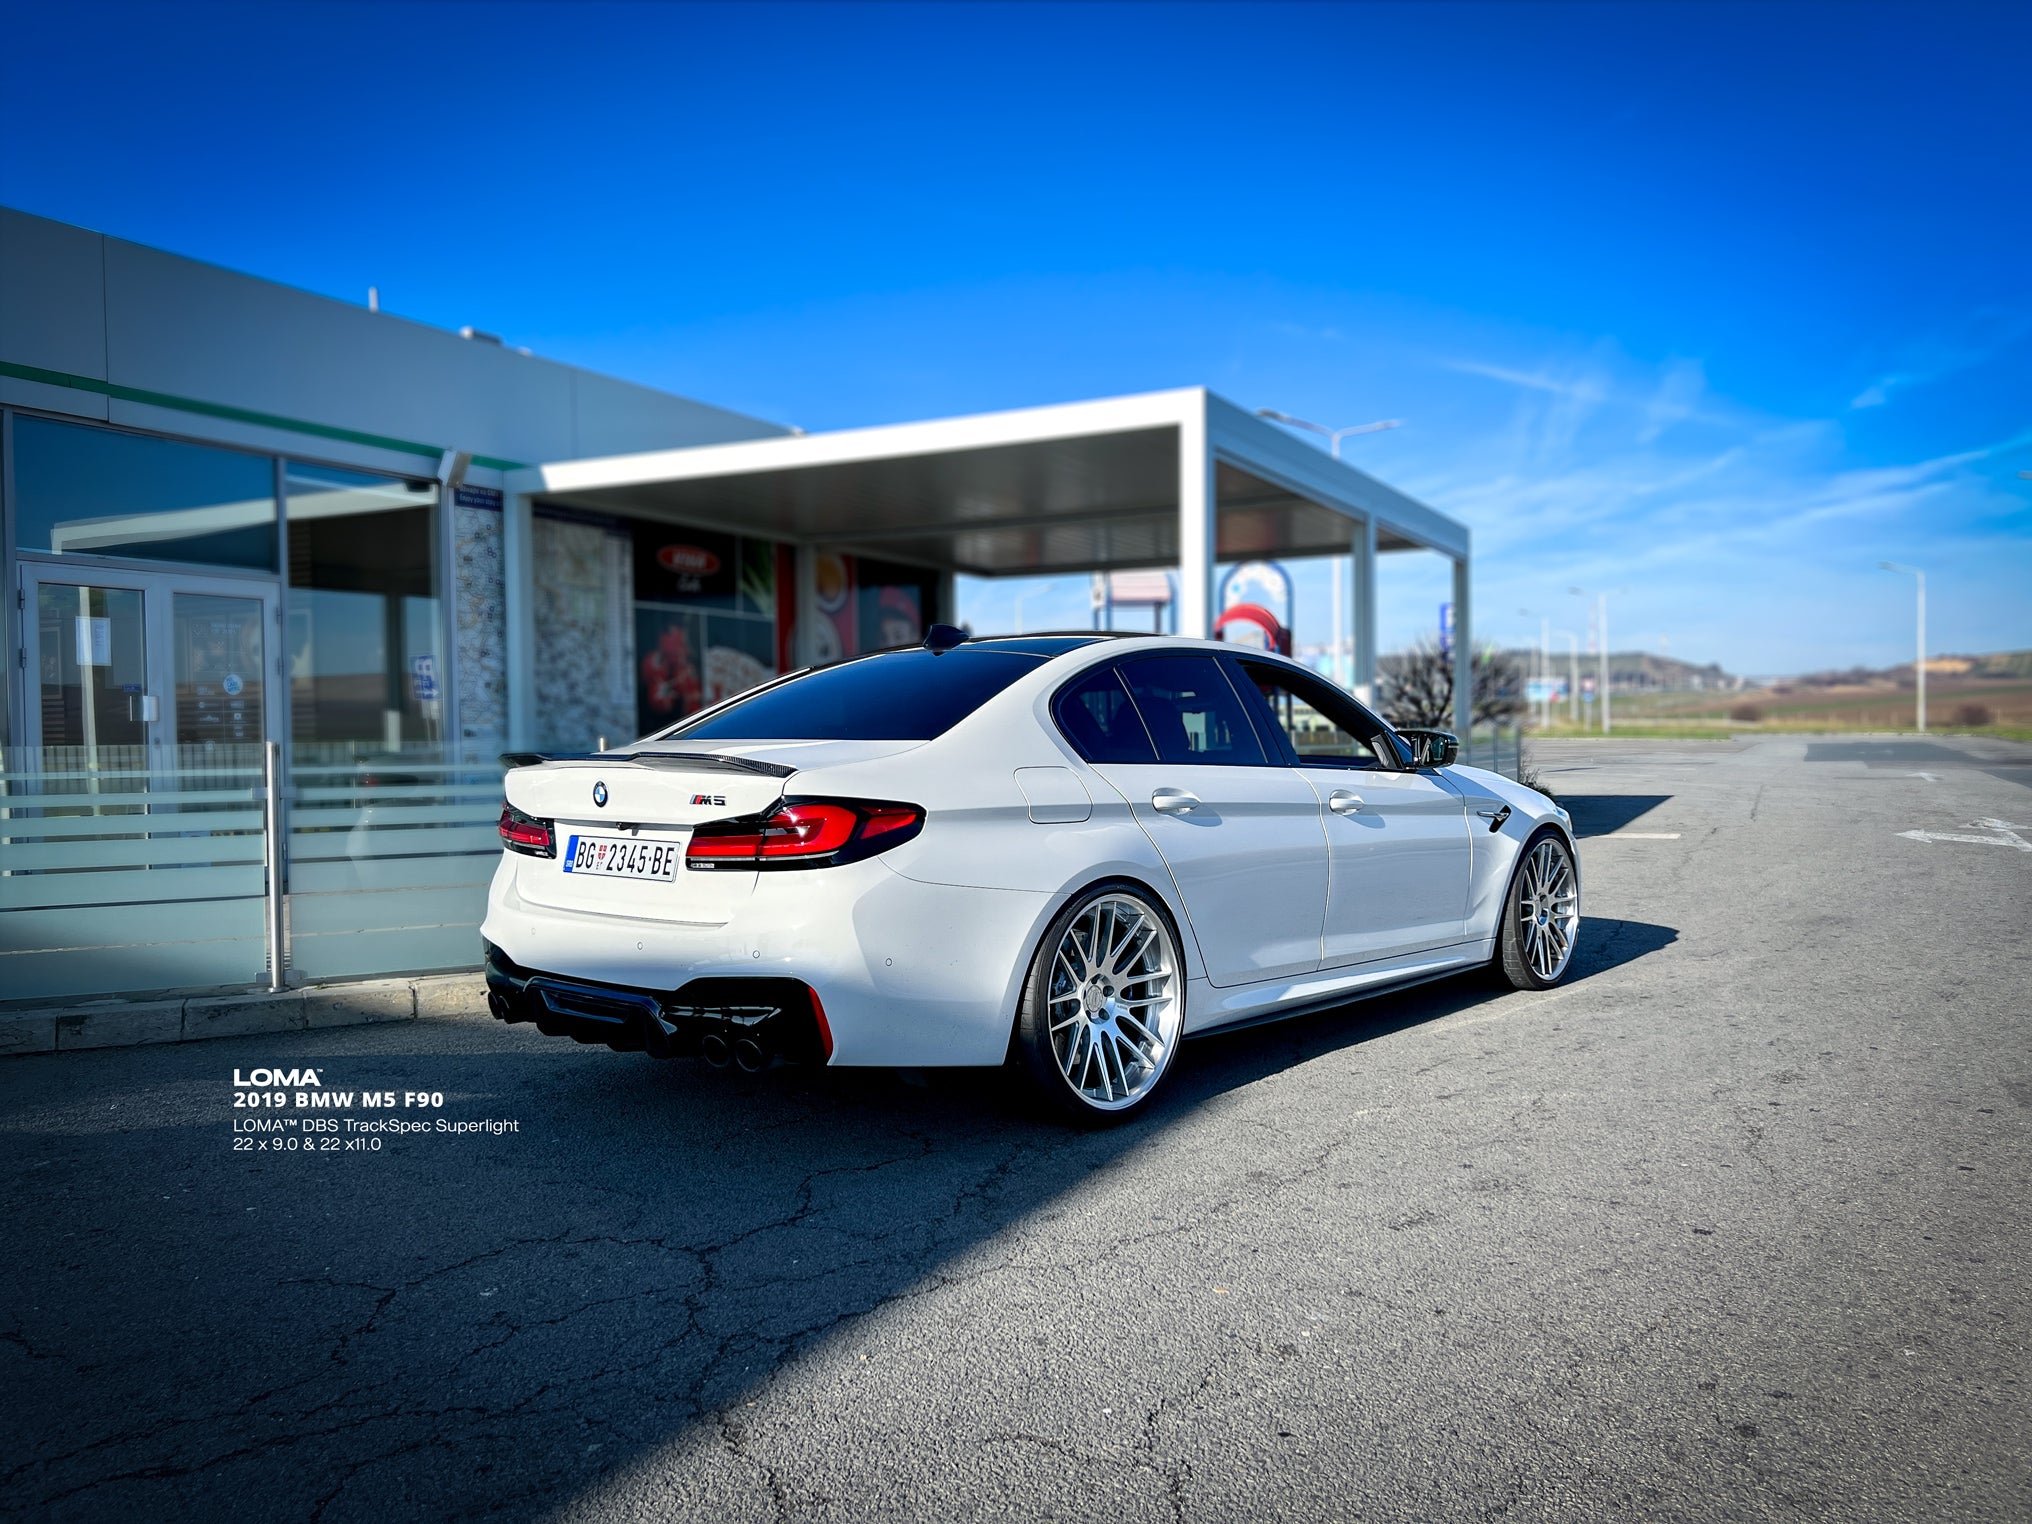 2019-BMW-M5-F90-on-LOMA-DBS-TrackSpec-Custom-Forged-Alloy-Wheels-1